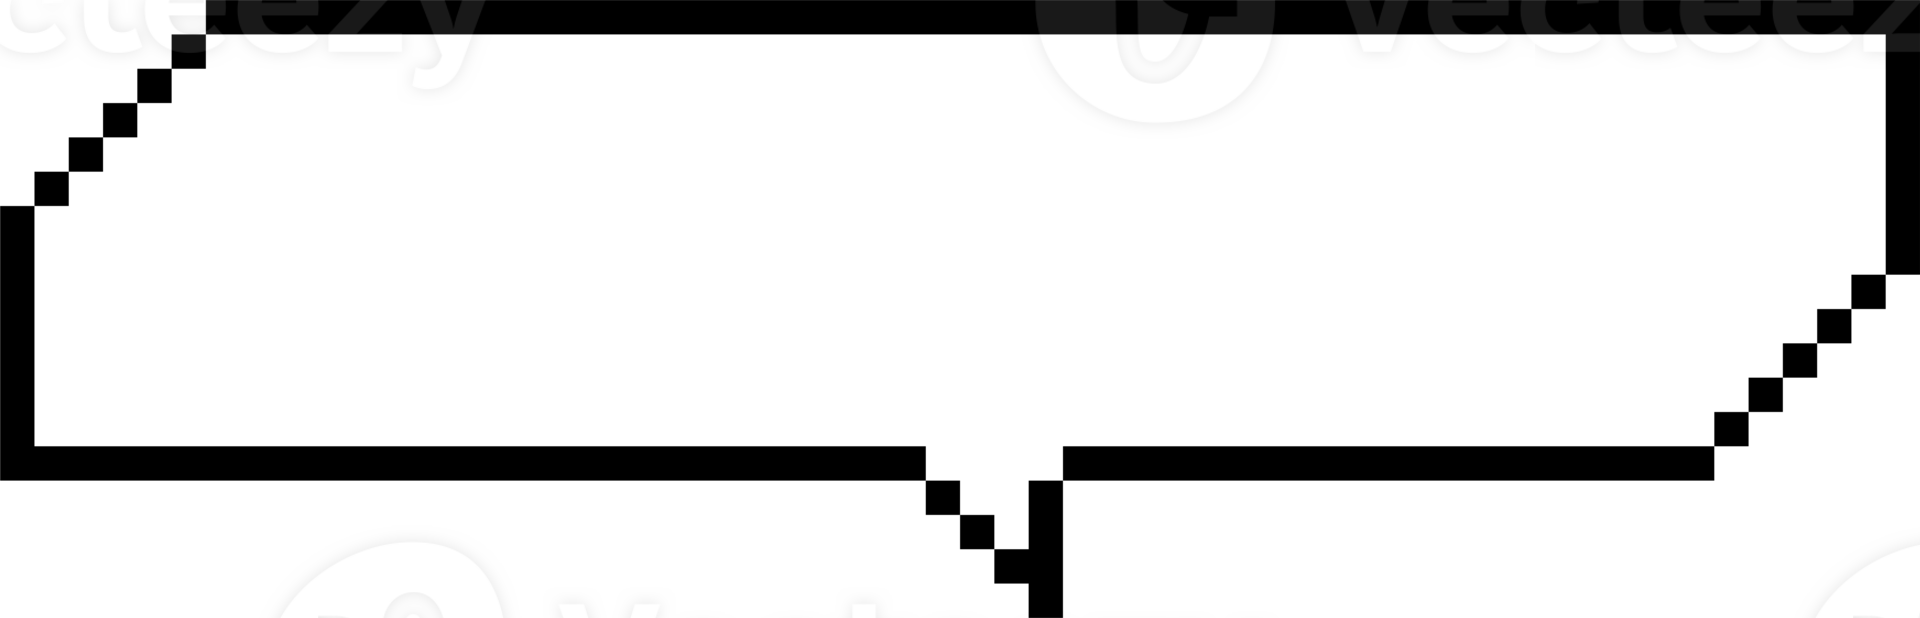 8 bits rétro Jeu pixel discours bulle ballon icône autocollant note mot-clé planificateur texte boîte bannière png